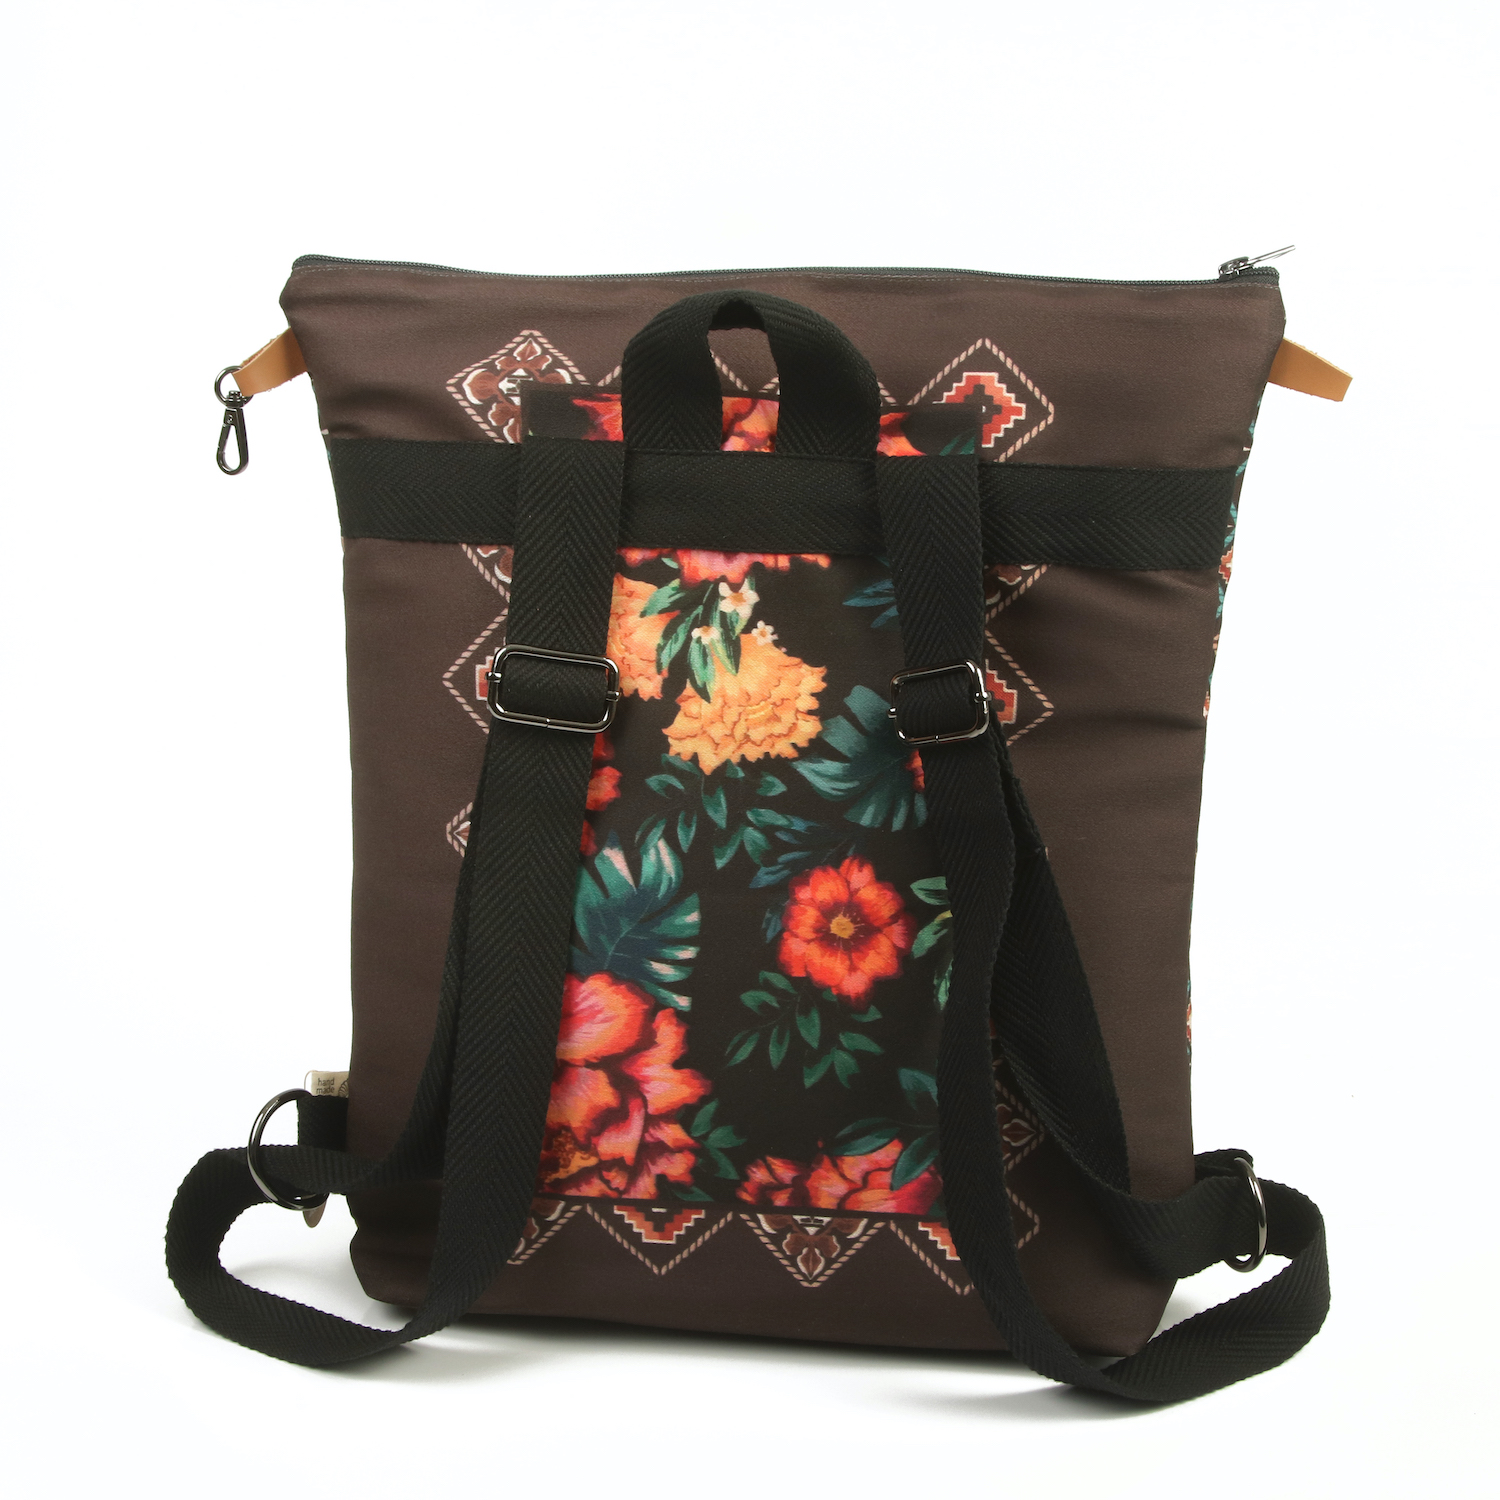 LazyDayz Designs Backpack γυναικείος σάκος πλάτης χειροποίητος bb0506c